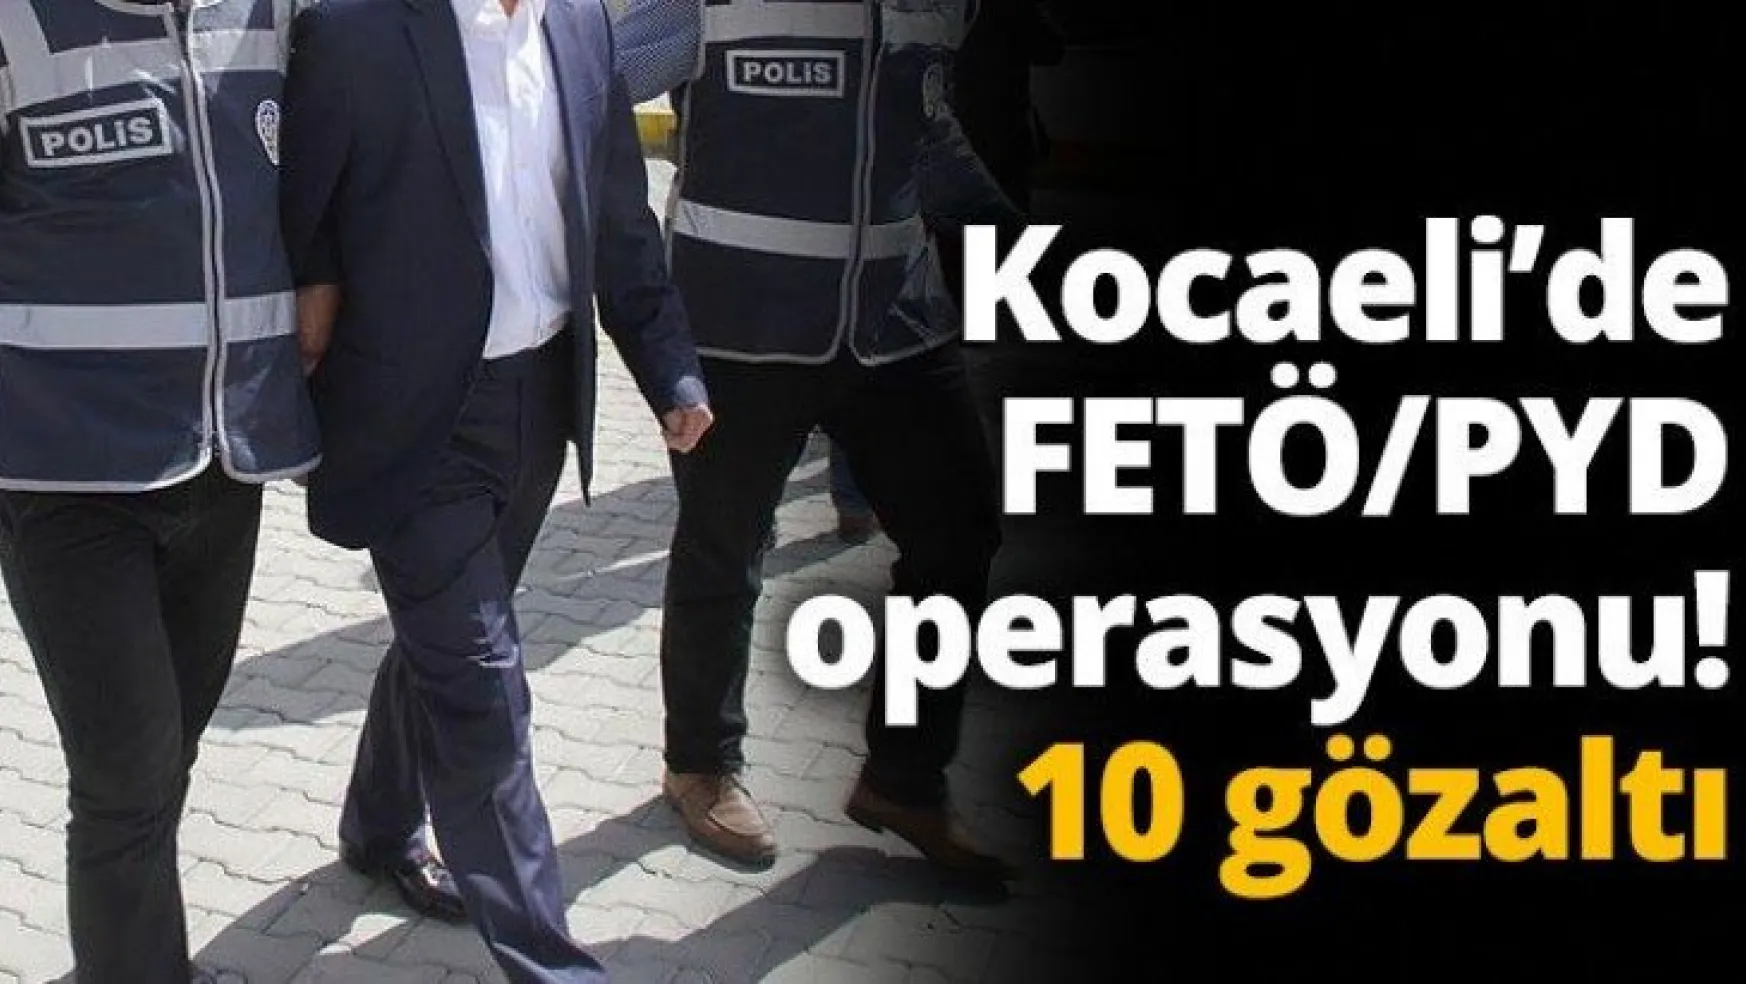 Kocaeli'de FETÖ/PYD operasyonu! 10 gözaltı